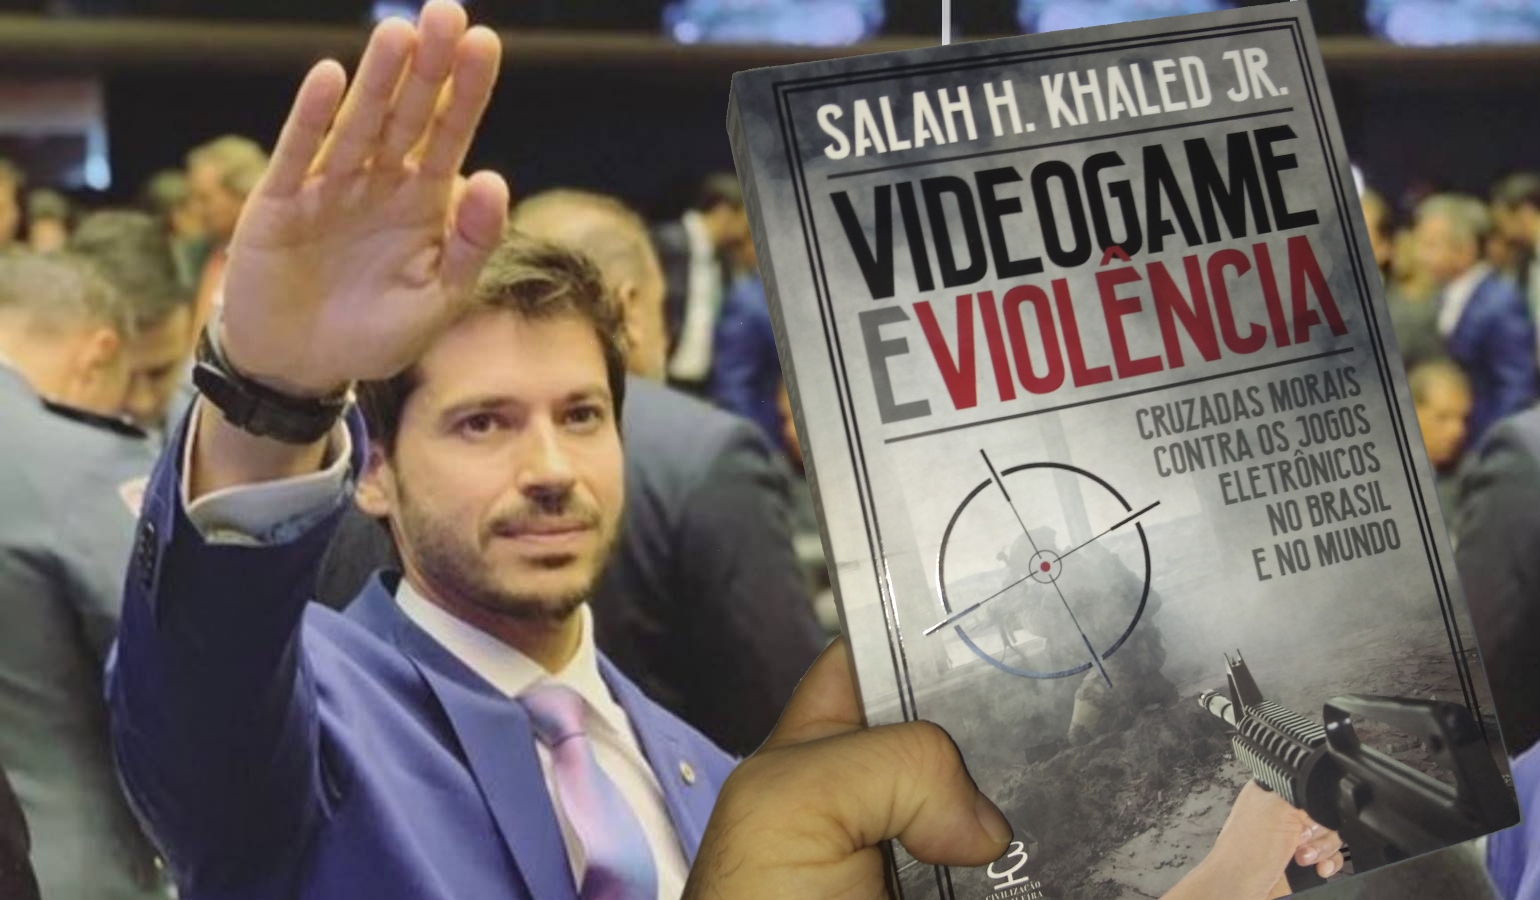  Videogame e violência: Cruzadas morais contra os jogos  eletrônicos no Brasil e no mundo: 9788520009895: Salah H. Khaled Jr.: Books